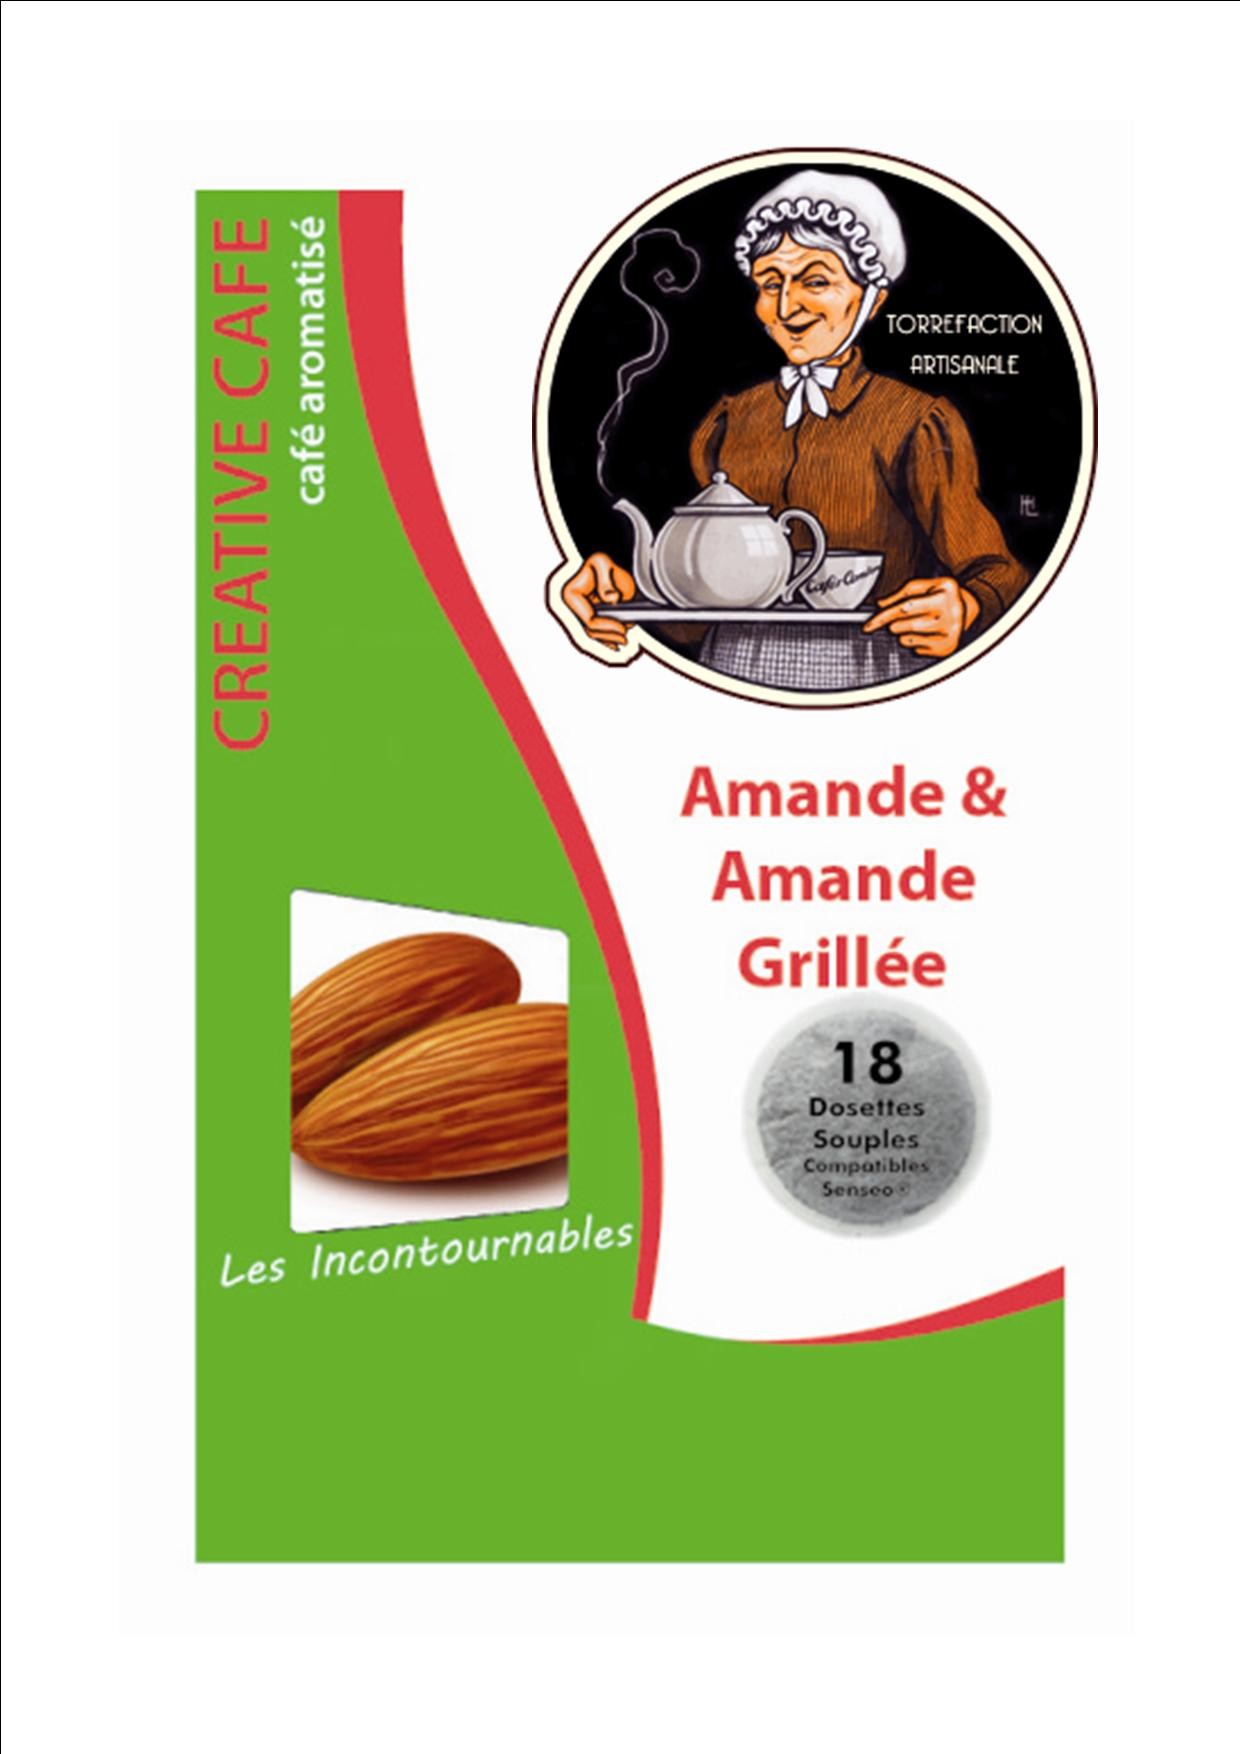 Café aromatisé - Amandes grillées